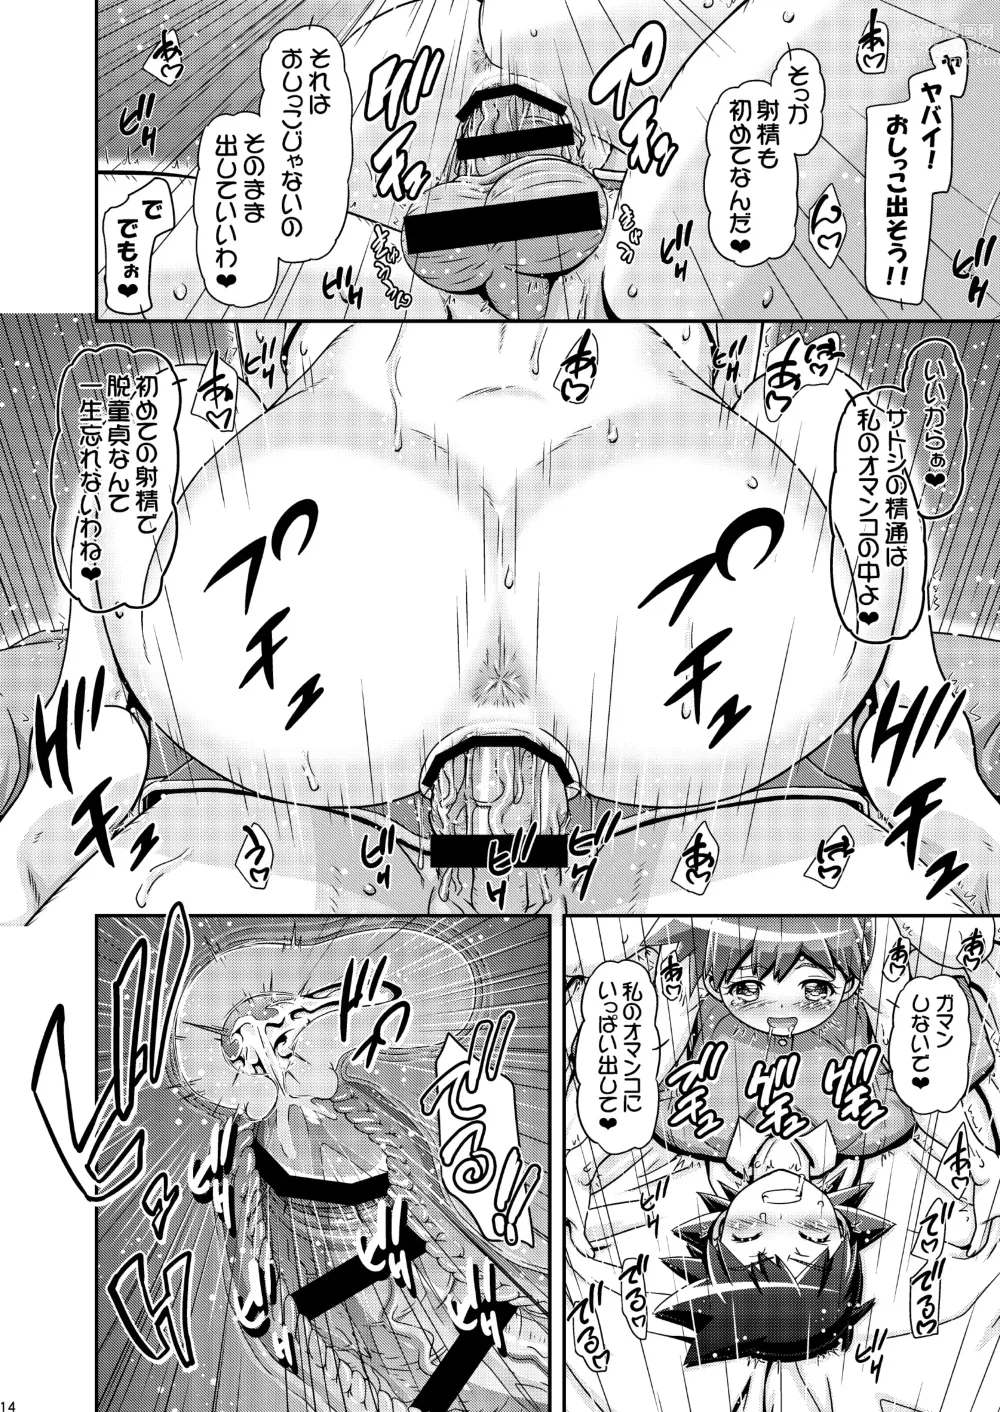 Page 13 of doujinshi PM GALS XY 2